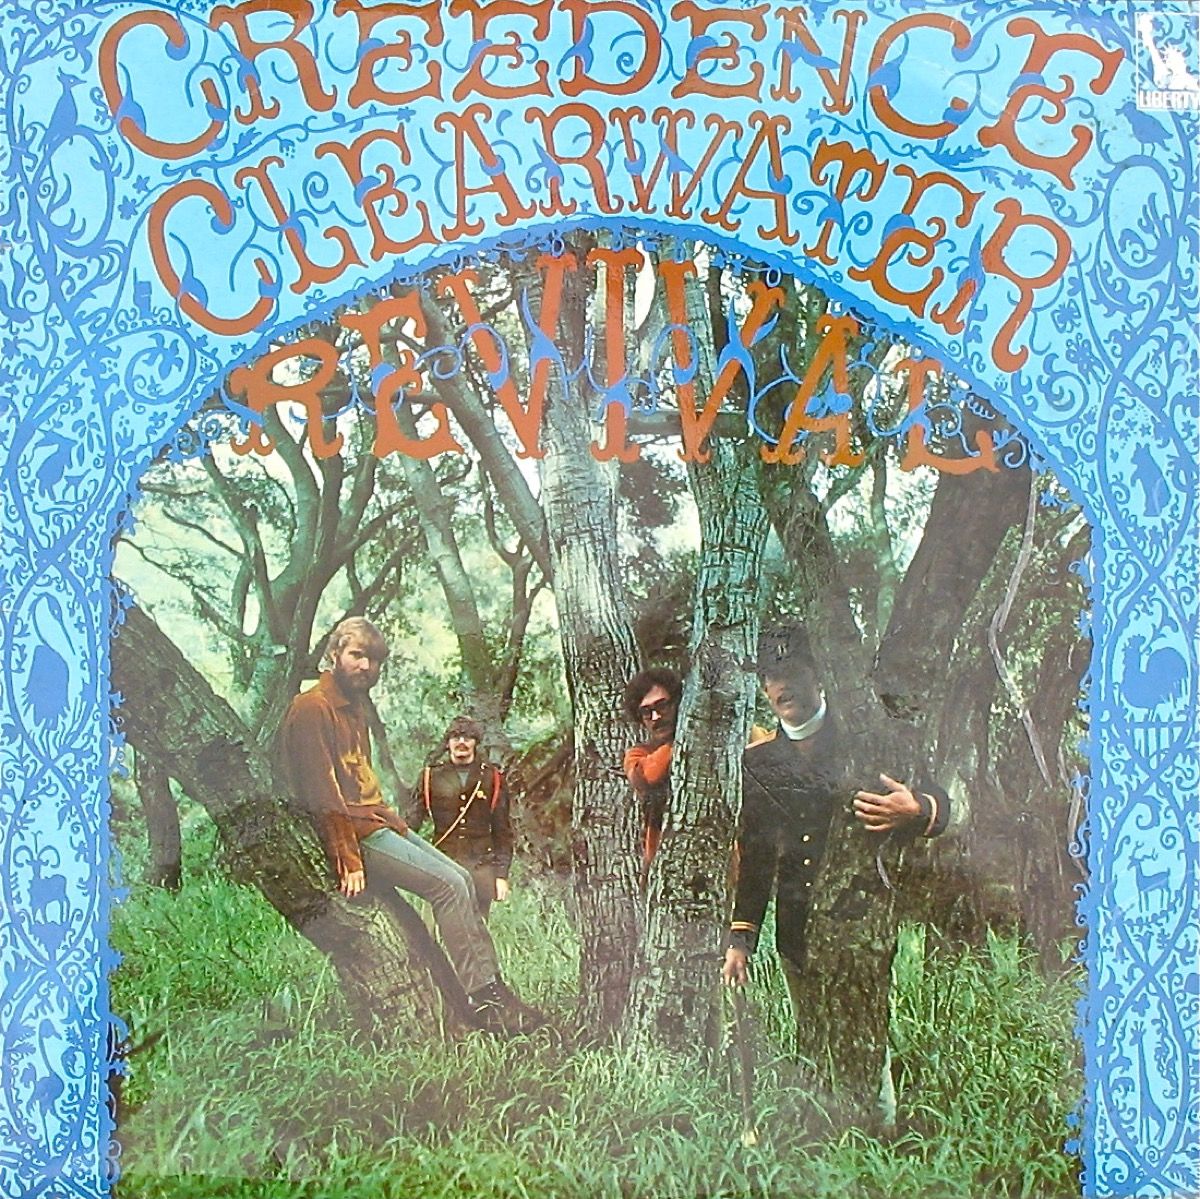 Naslovnica albuma prvijenca Creedence Clearwater Revival